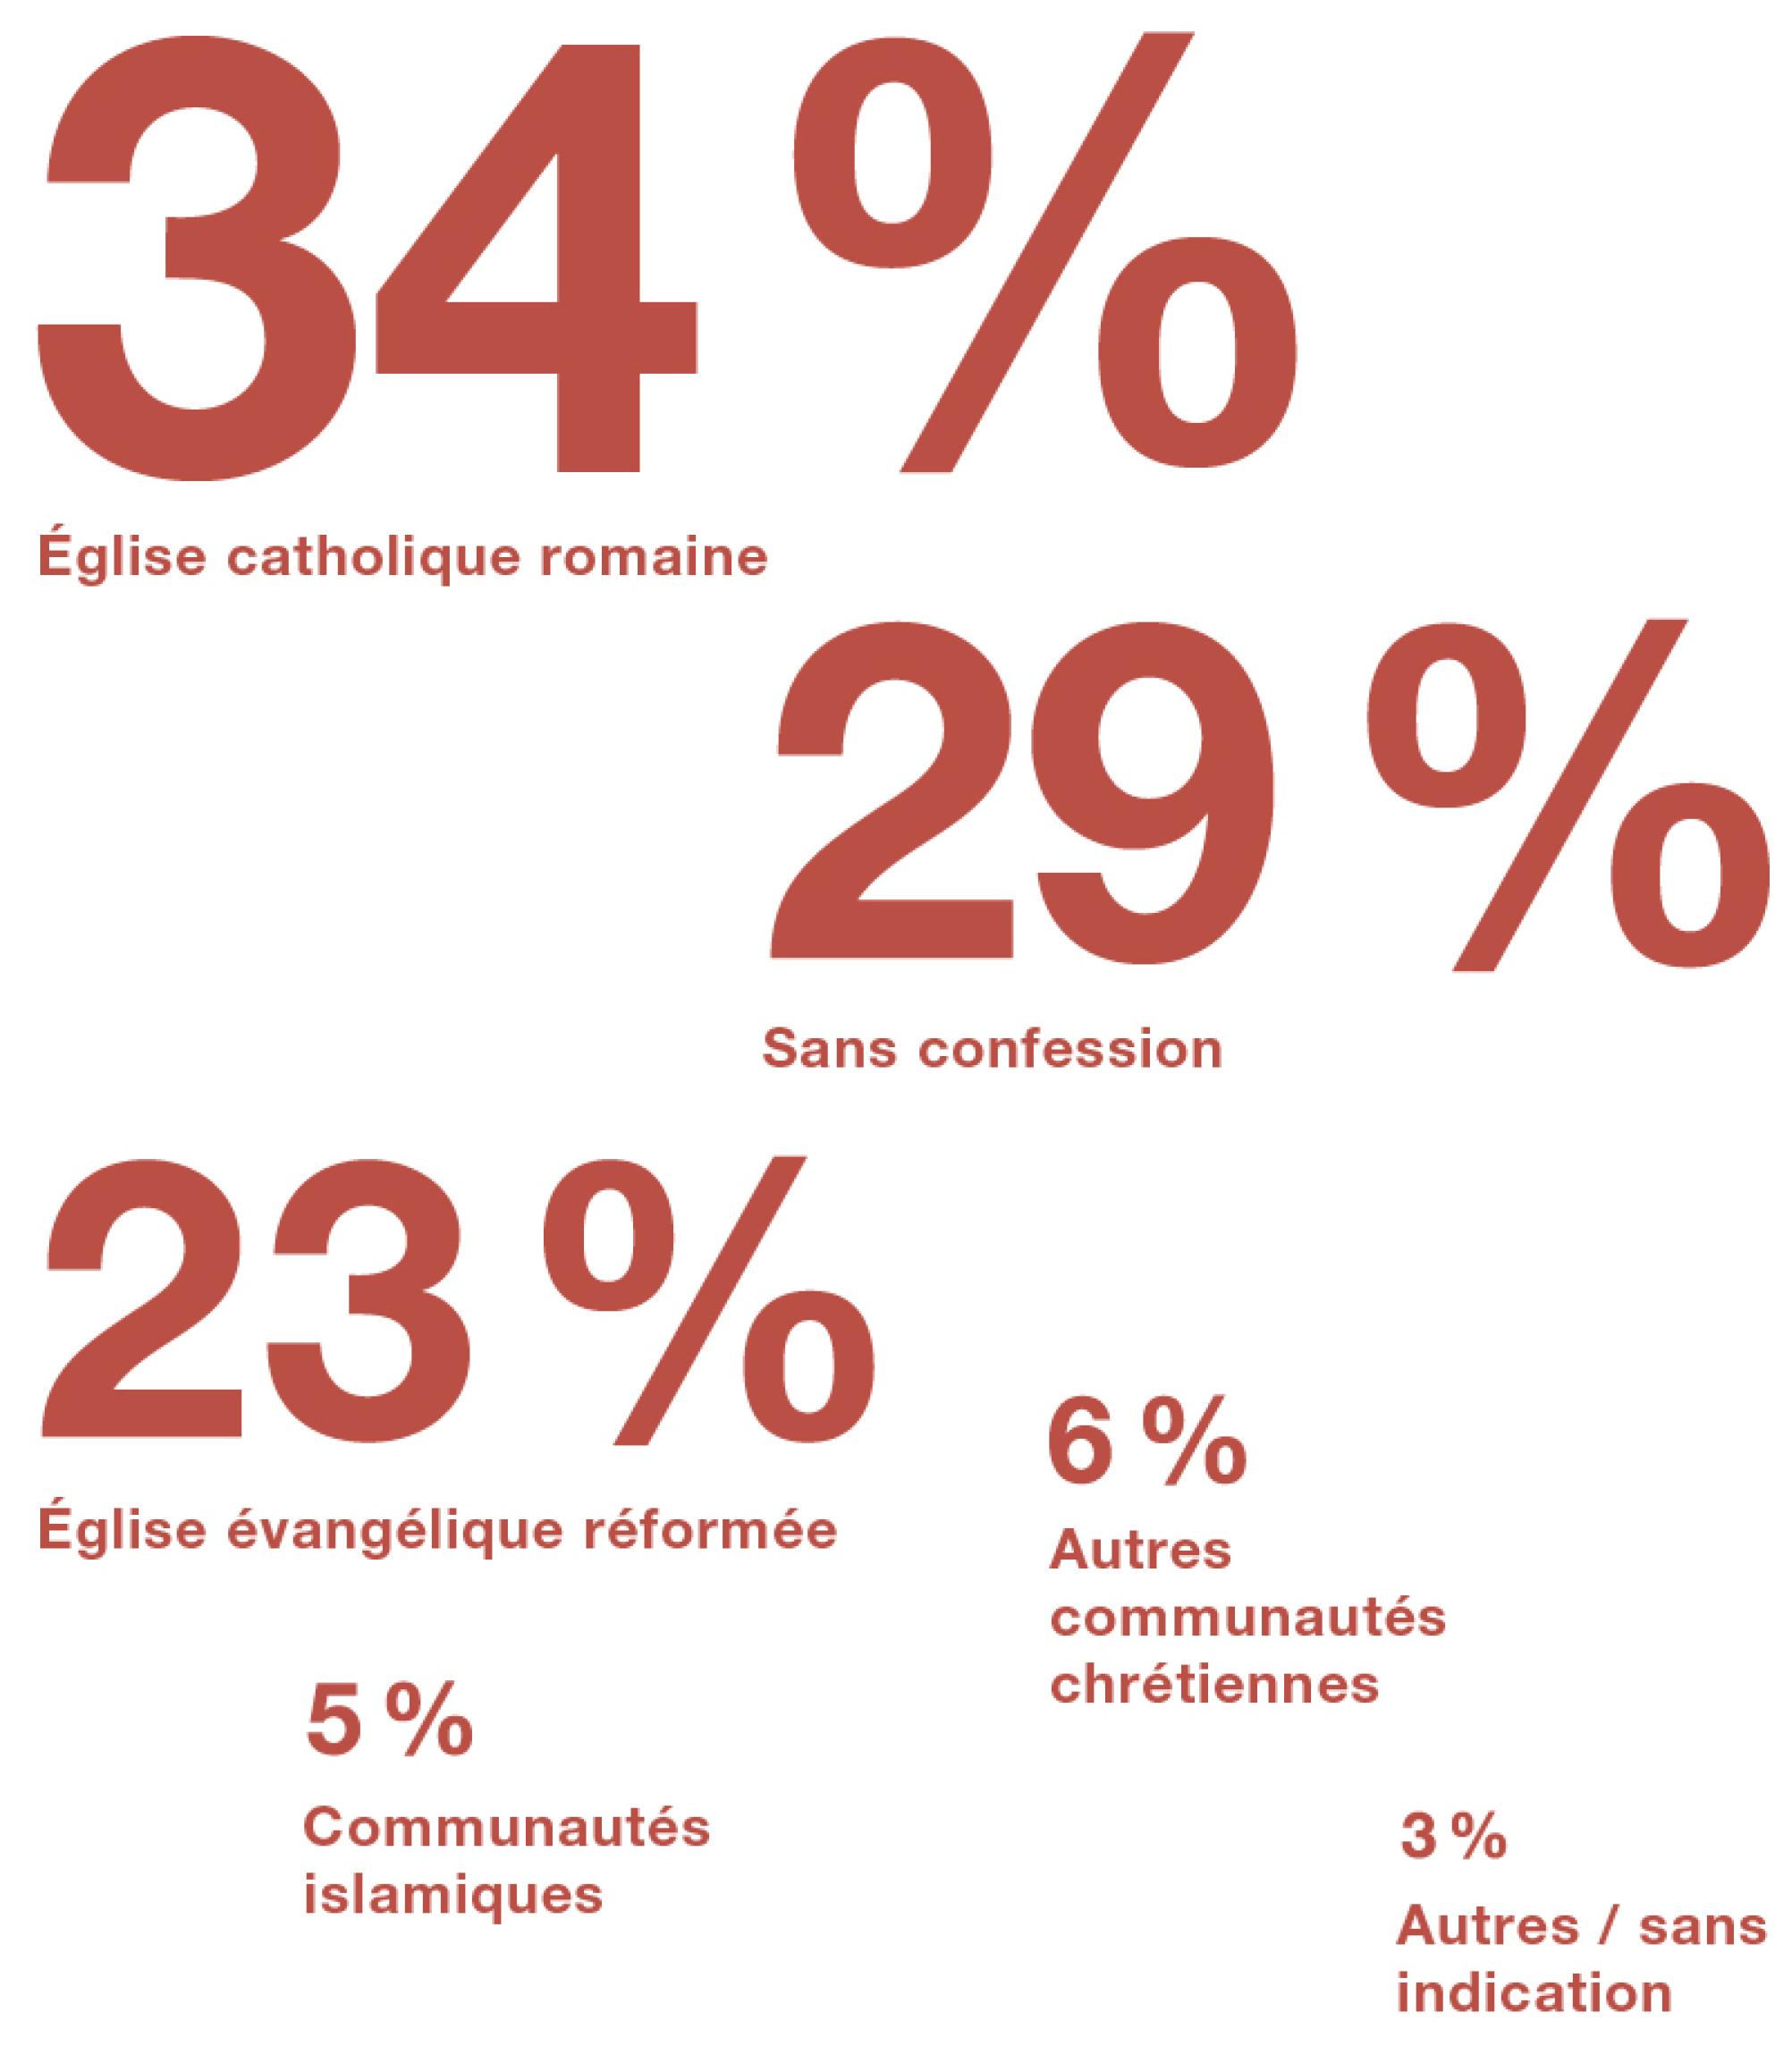 la proportion d’habitants en Suisse en fonction de leur religion.  34 % sont catholiques, 29 % sans confession et 23 % réformés. 6 % appartiennent à d’autres communautés chrétiennes et 5 % à des communautés islamiques.